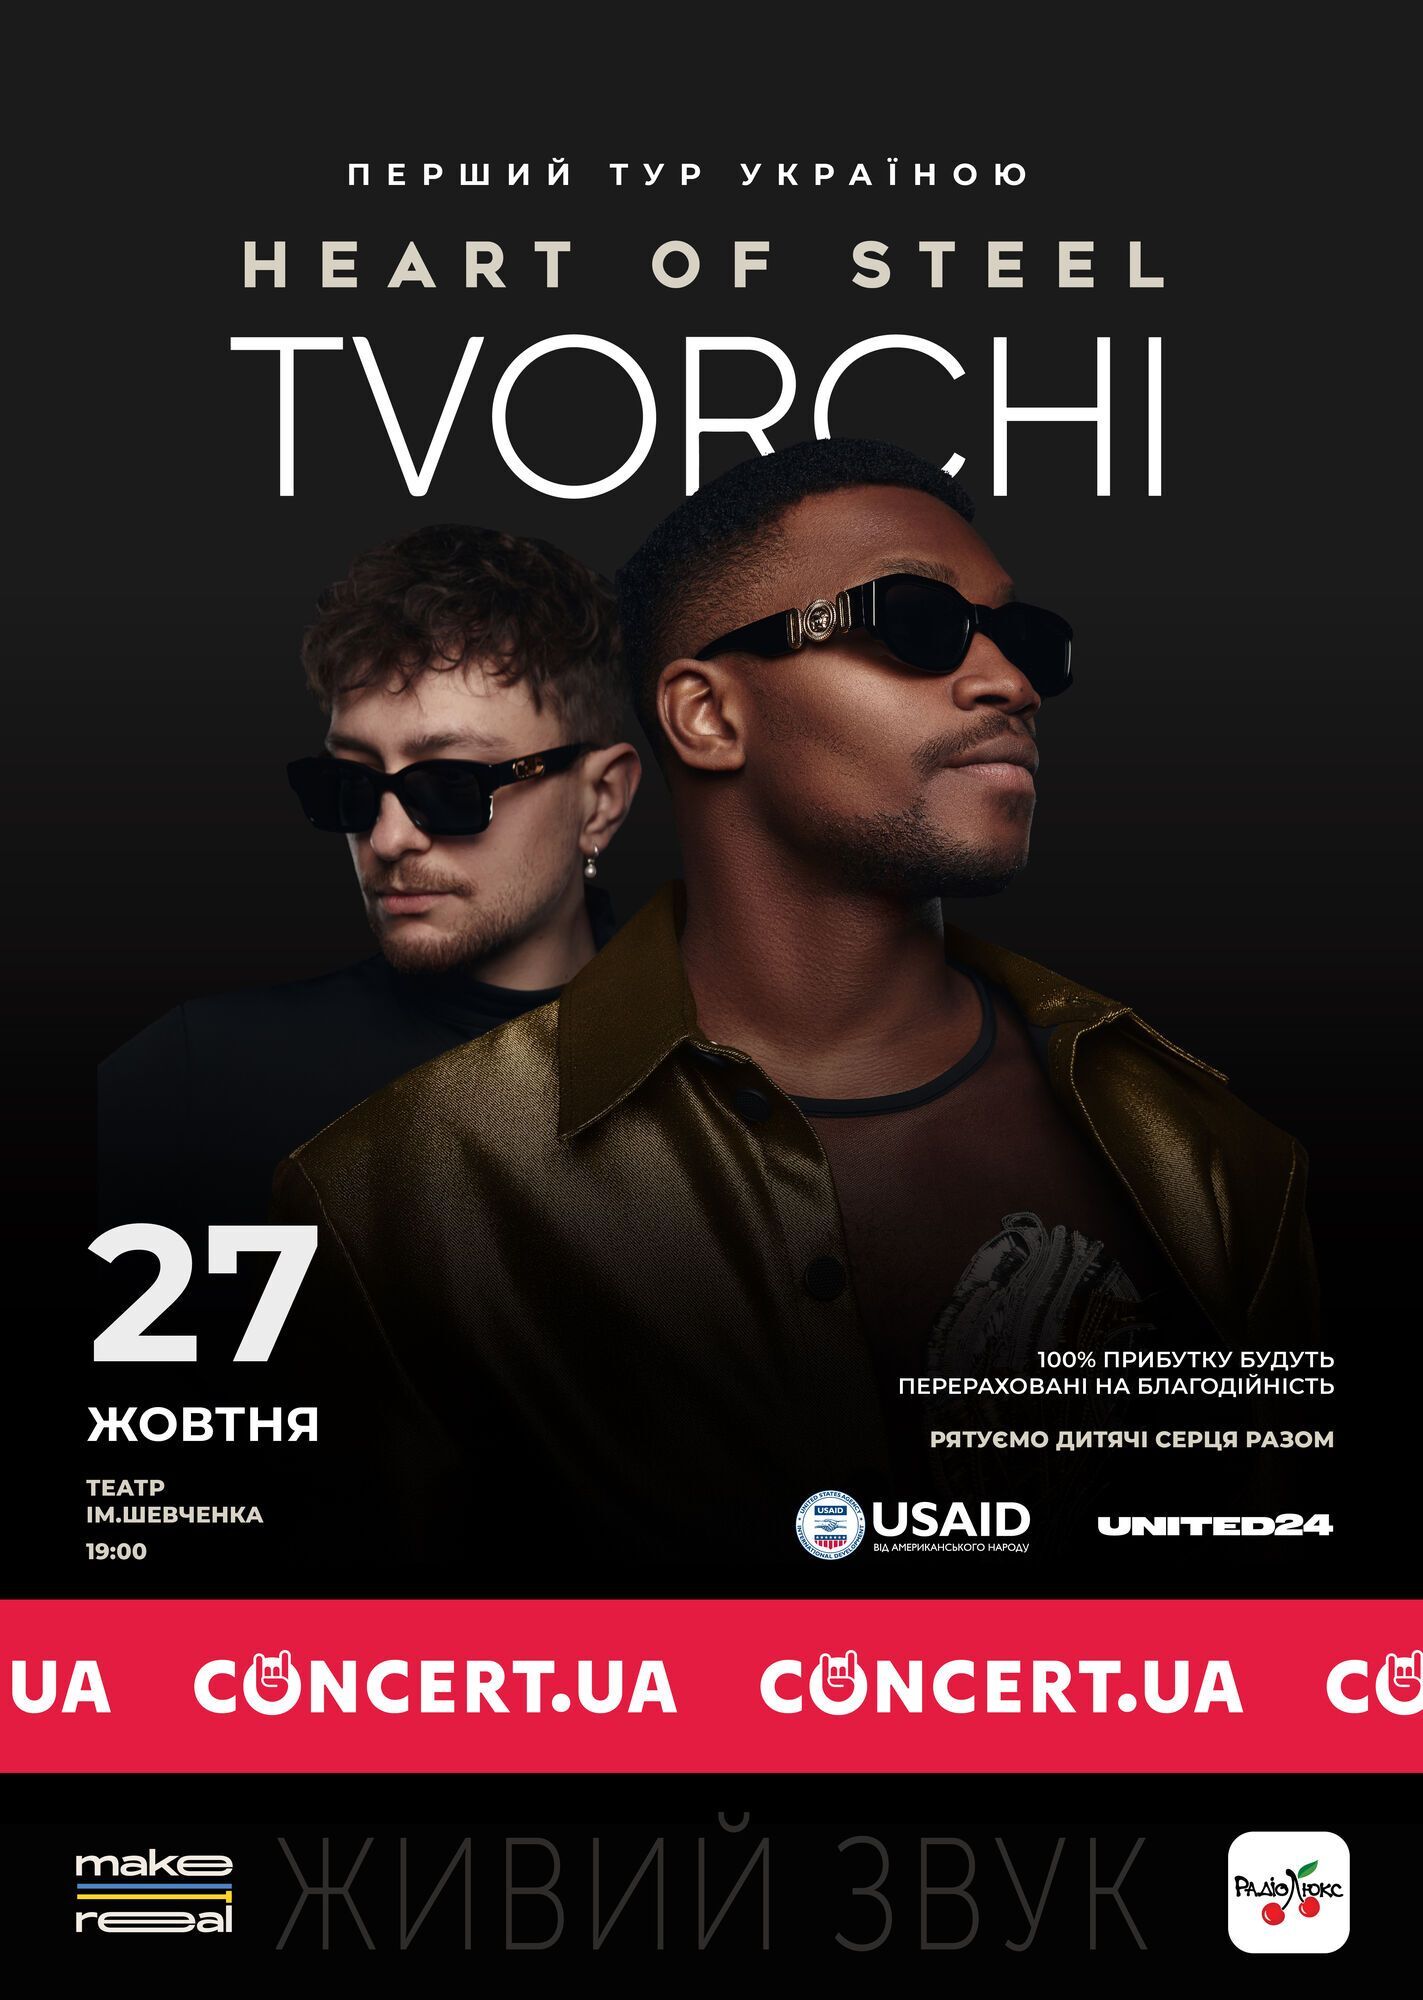 TVORCHI анонсировали благотворительный тур на востоке Украины